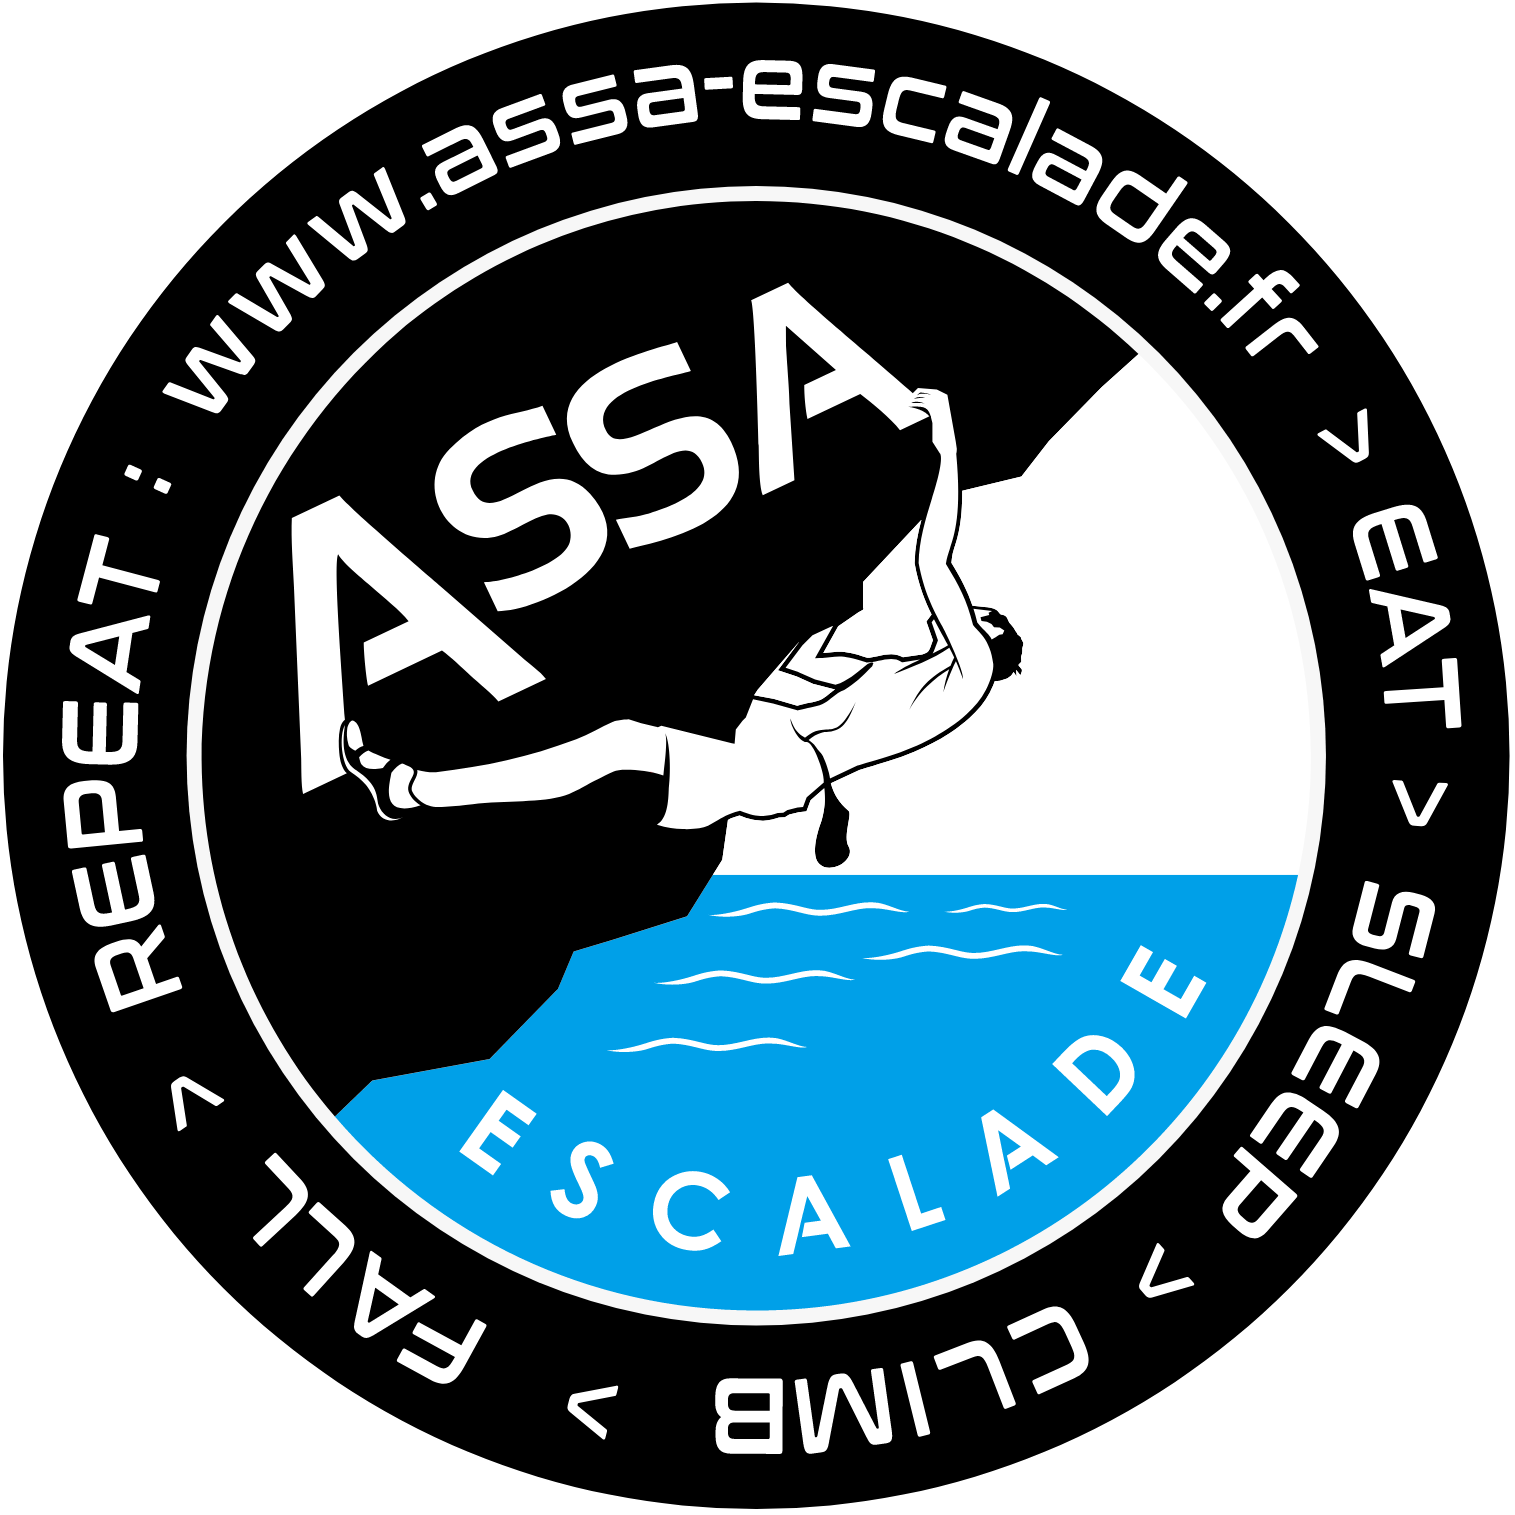 Association ASSA escalade